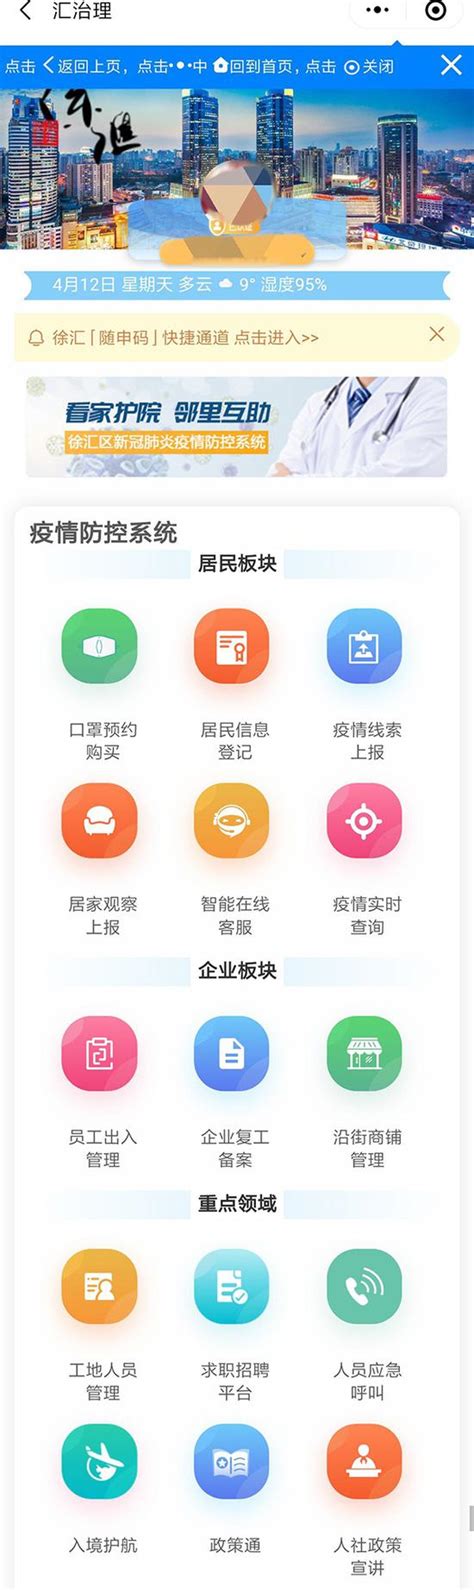 上海一网管全城还将升级2.0版 一屏统观全市宏观运营_新浪上海_新浪网